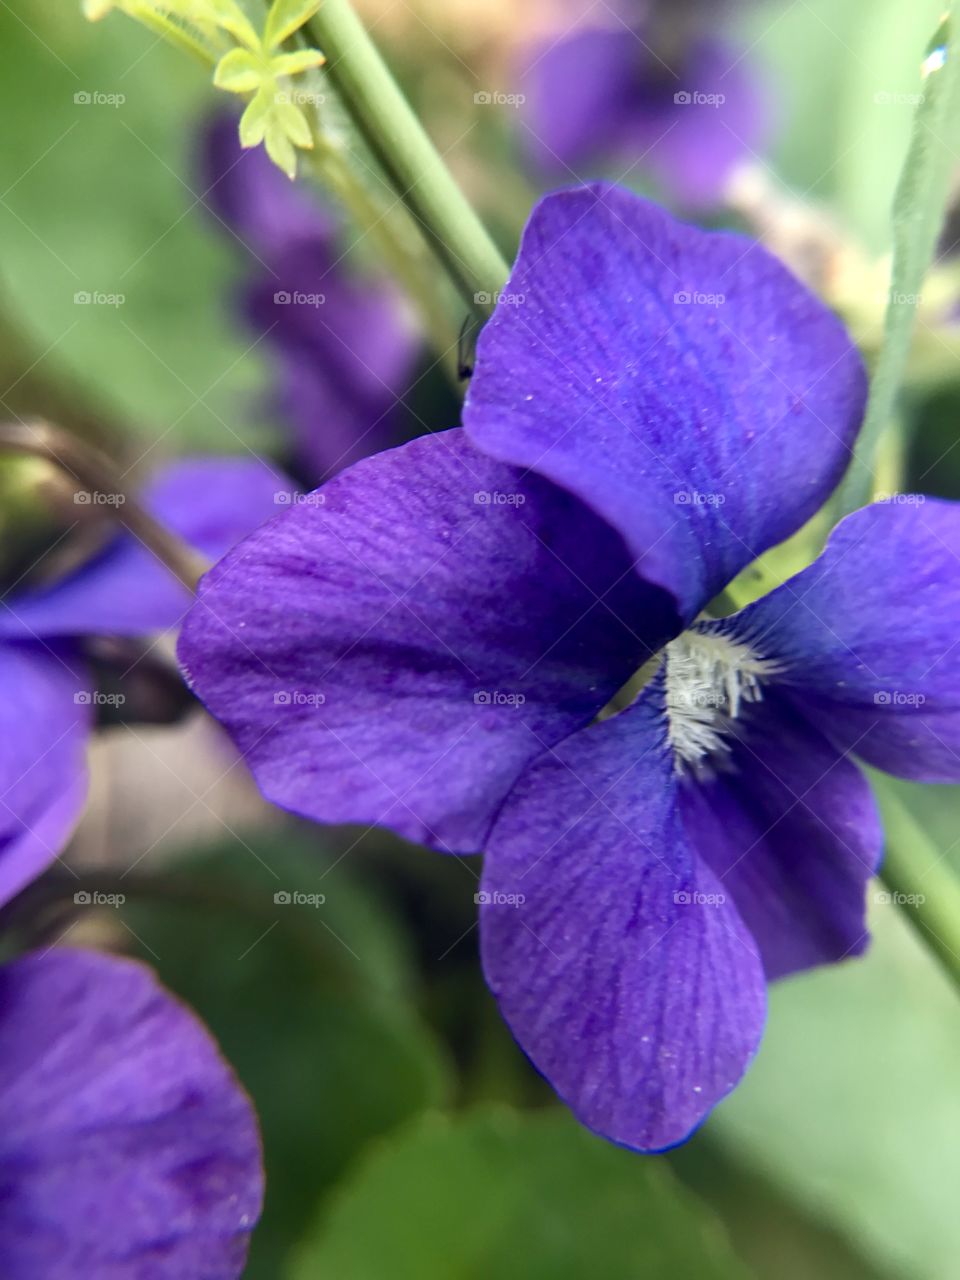 Purple field flower